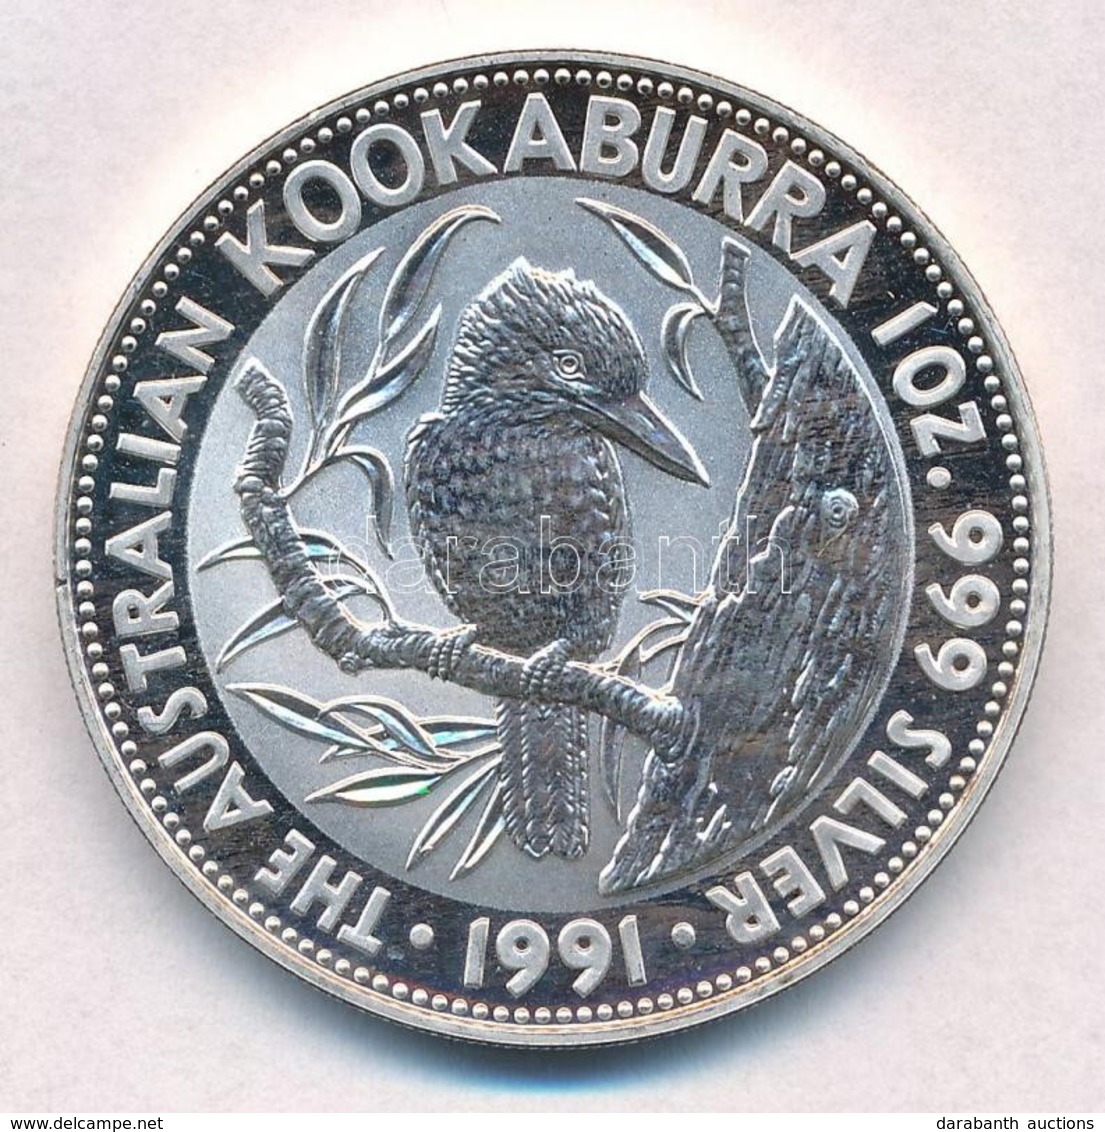 Ausztrália 1991. 5$ Ag 'Kacagójancsi' T:1 (eredetileg PP)
Australia 1991. 5 Dollars Ag 'Kookaburra' C:UNC (originally PP - Unclassified